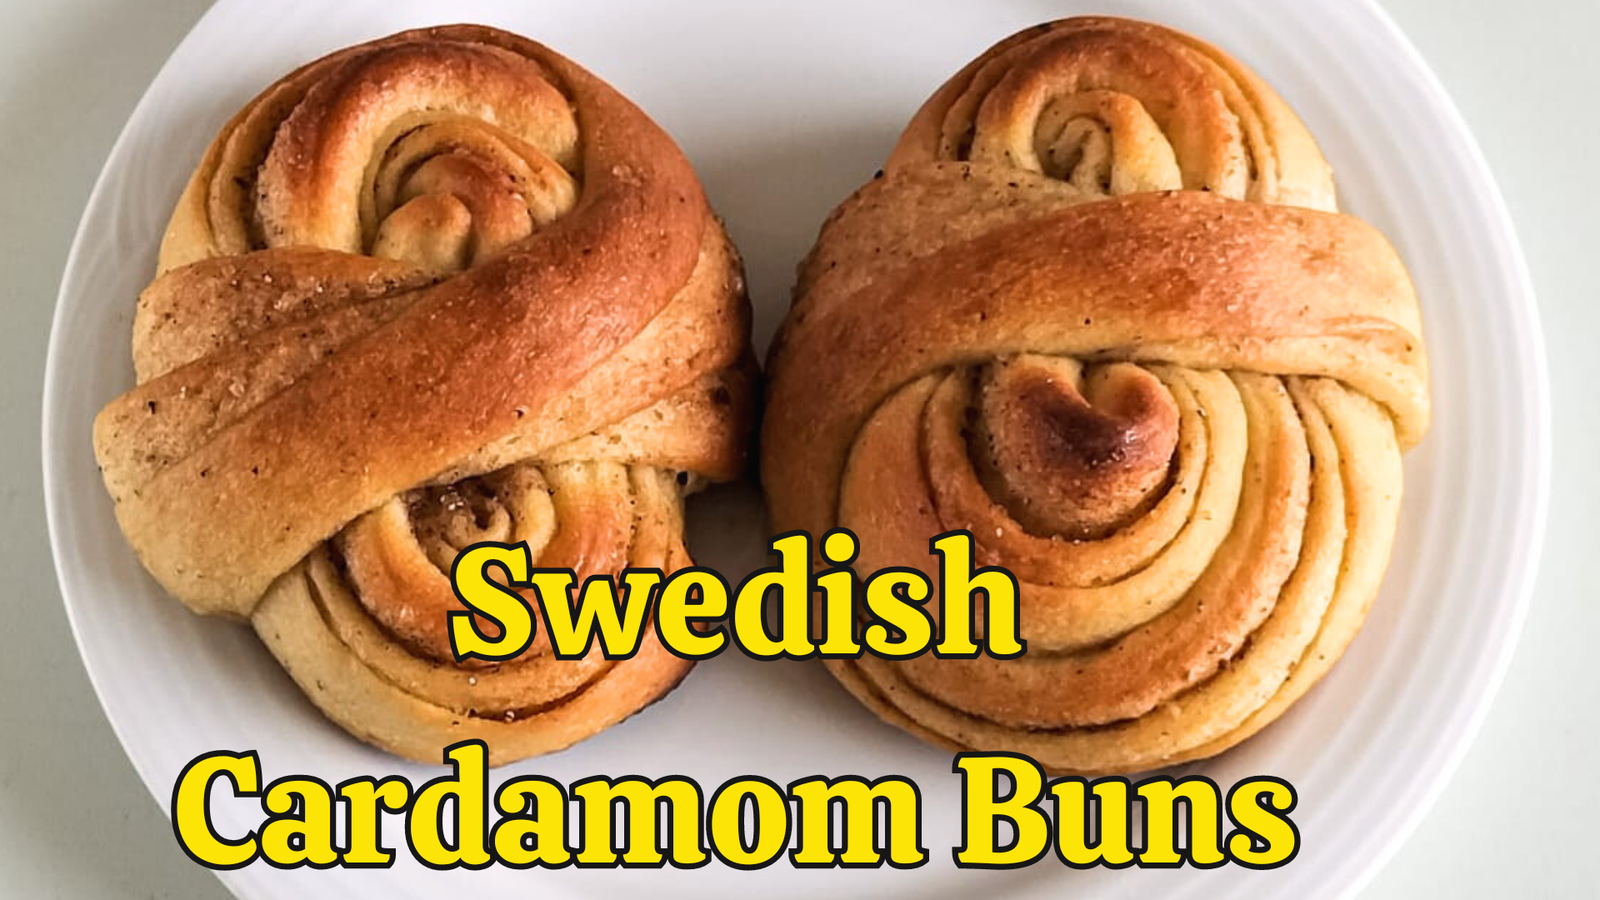 Swedish cardamom buns recipe